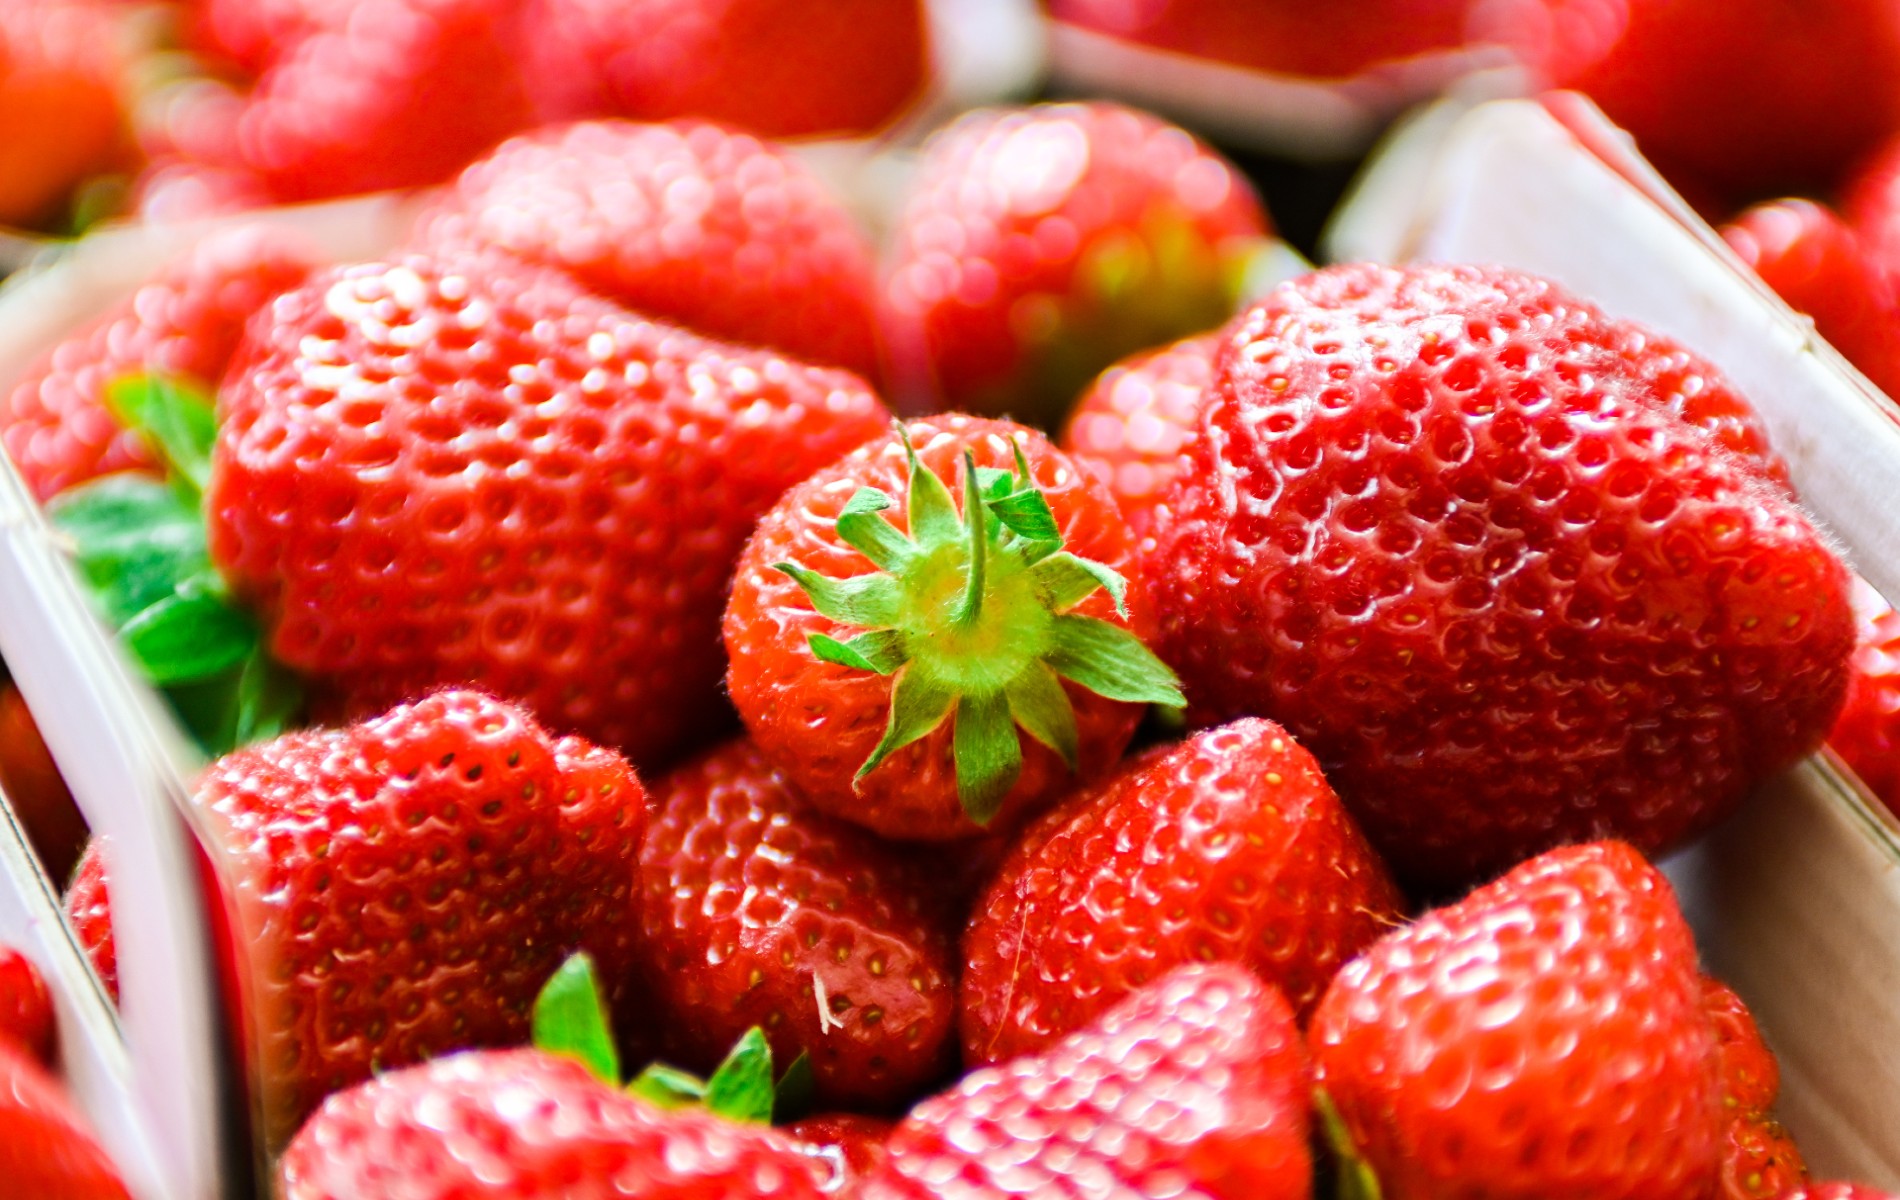 La fraise Label rouge séduit de plus en plus de producteurs